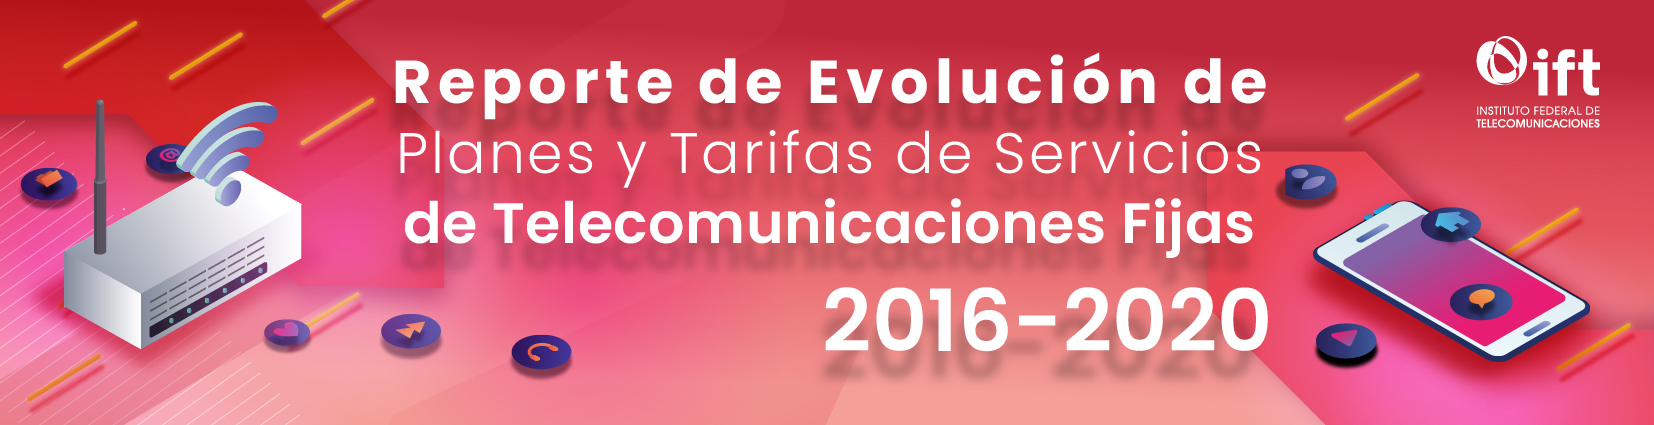 Reporte de Evolución de Planes y Tarifas de Servicios de Telecomunicaciones Fijas, 2016-2020